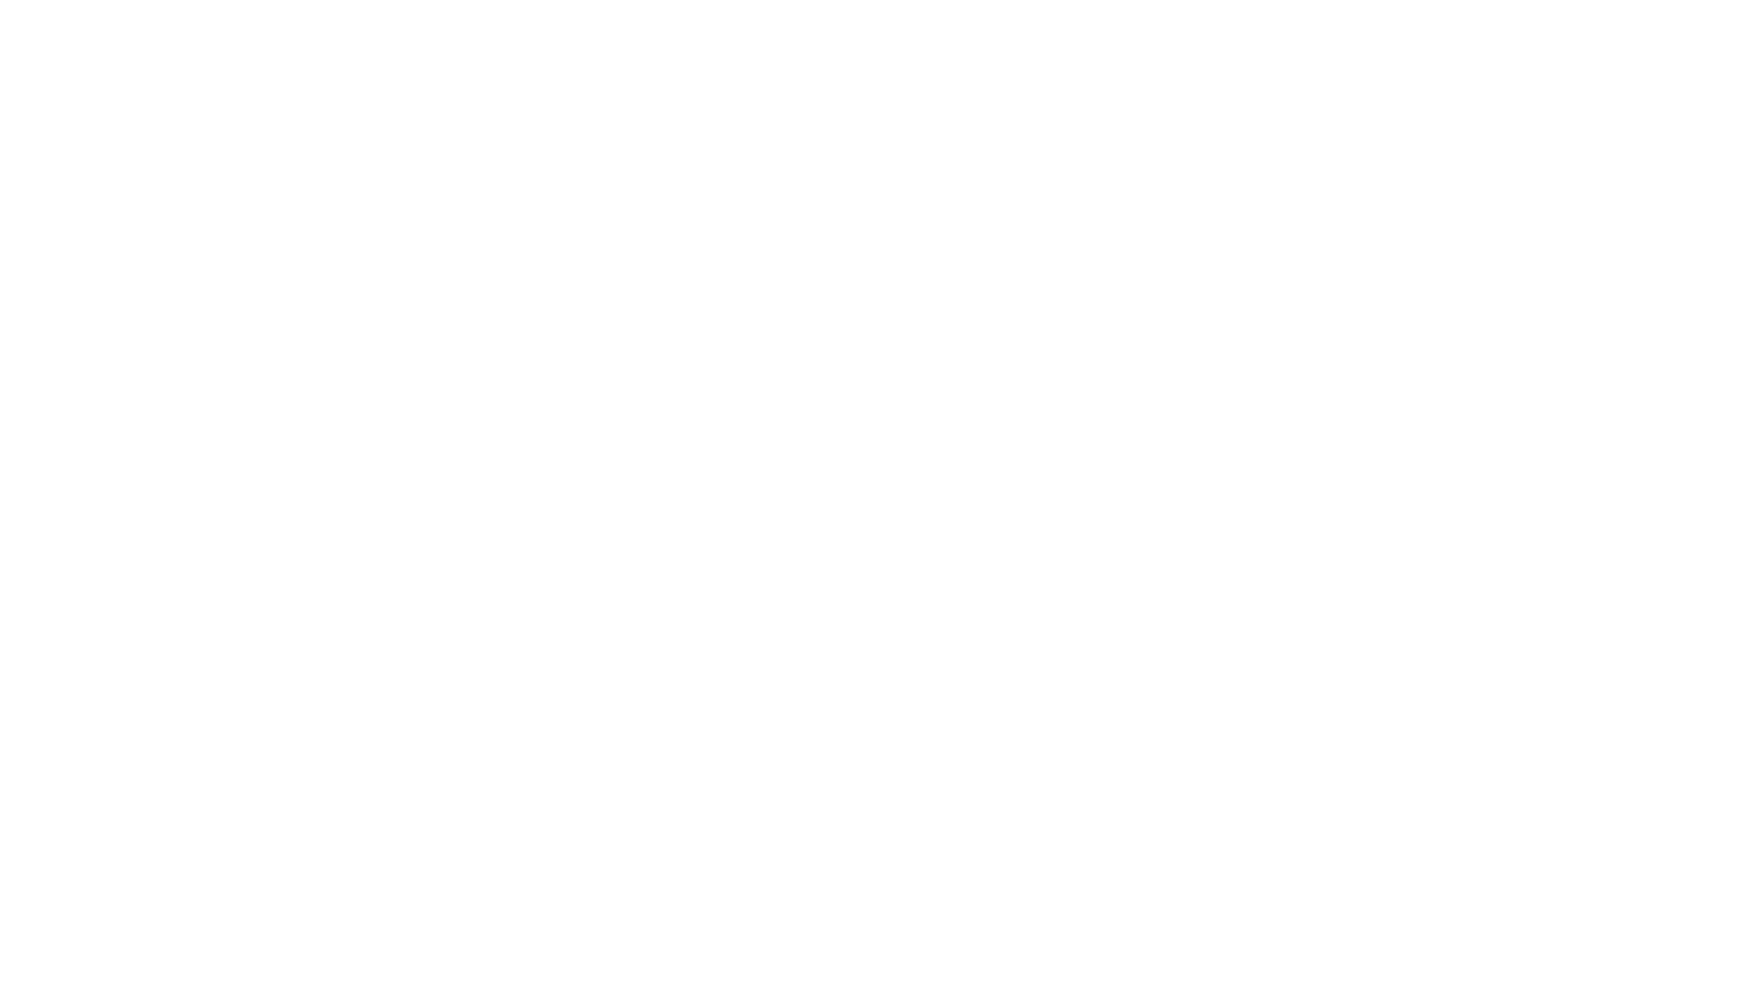 PMMC